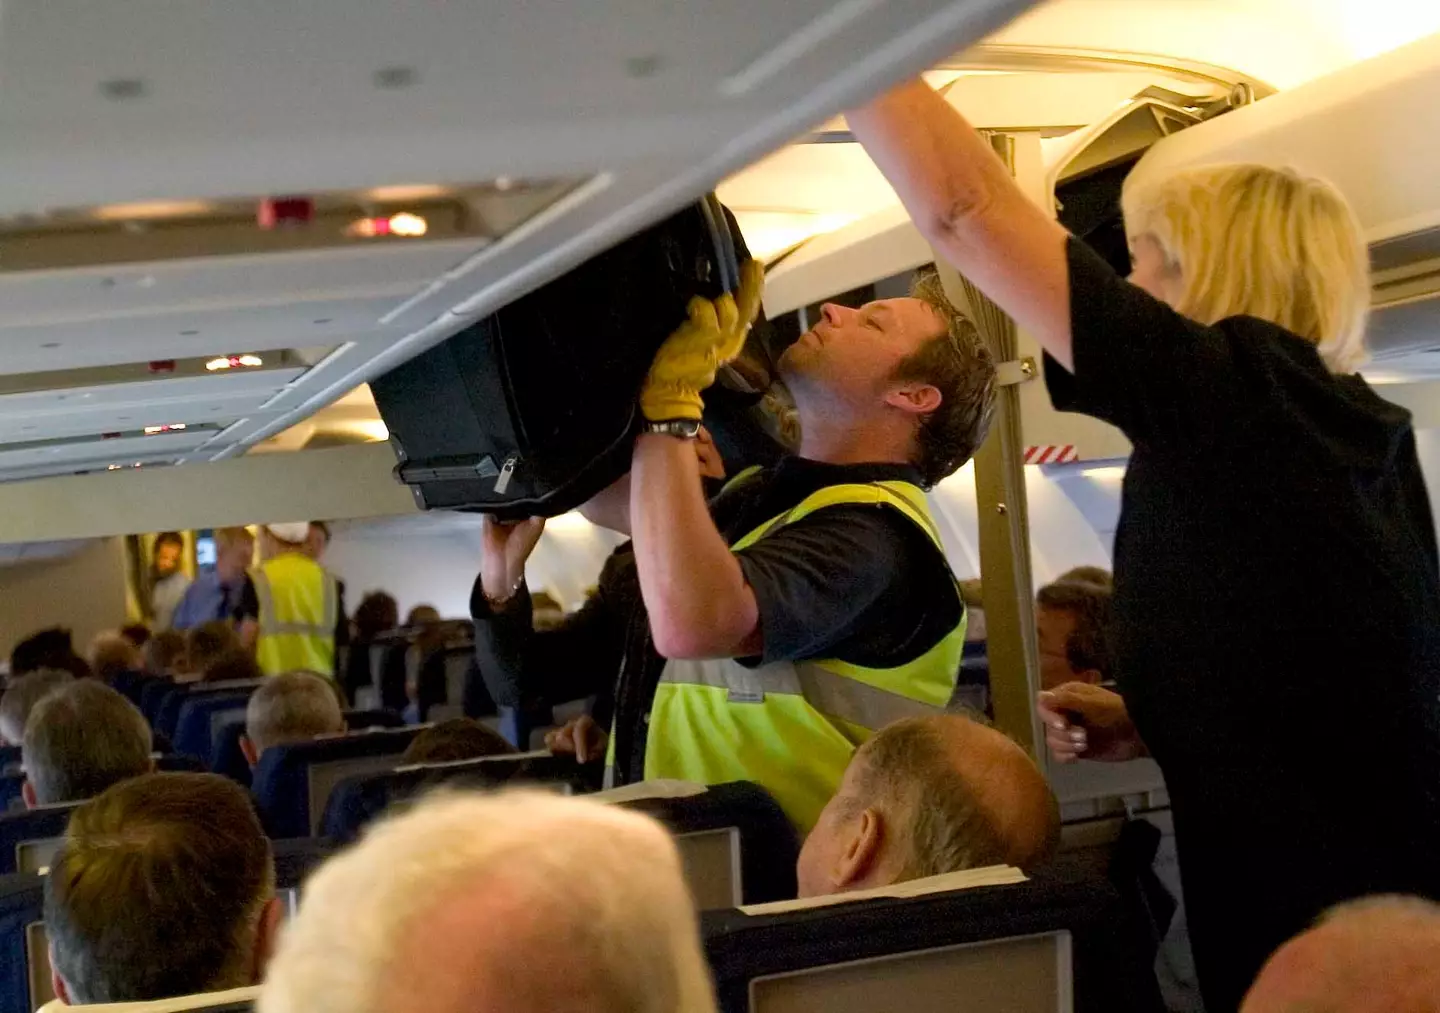 Plane etiquette is a pretty divisive one. (Alan Harvey/SNS Group via Getty Images)